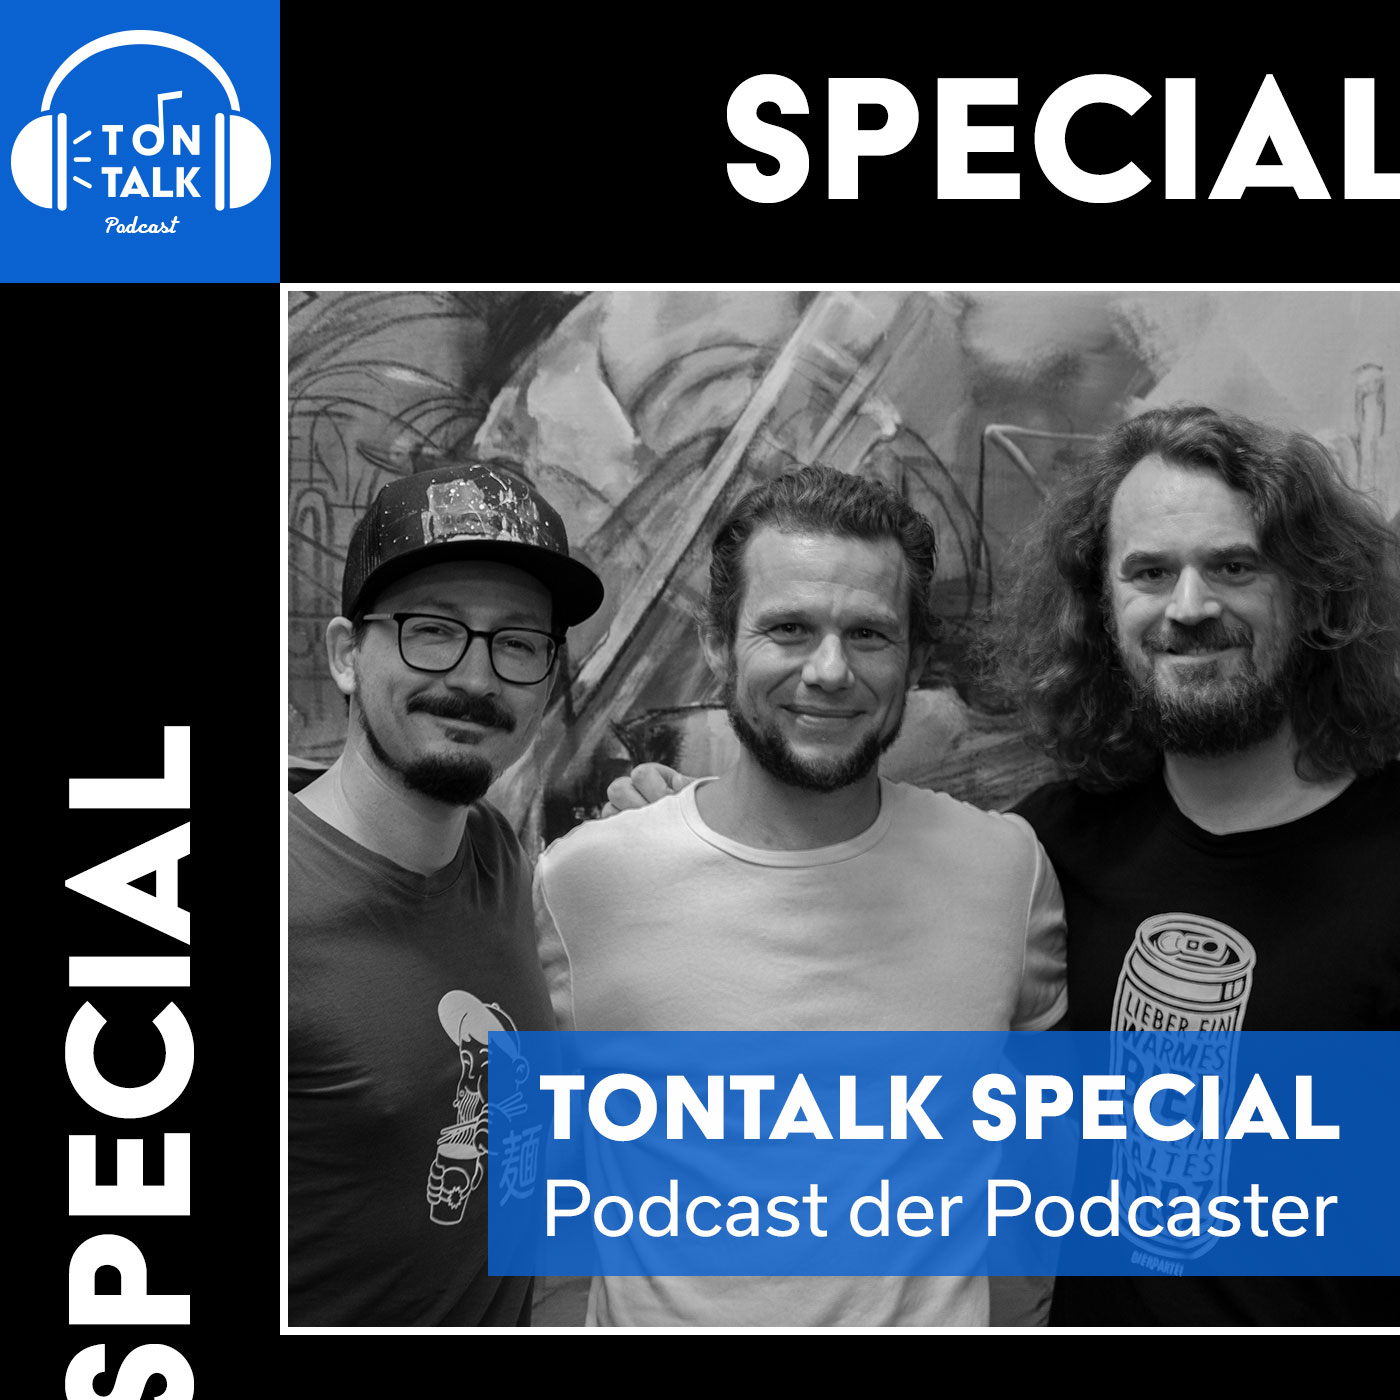 SPECIAL: Podcast der Podcaster